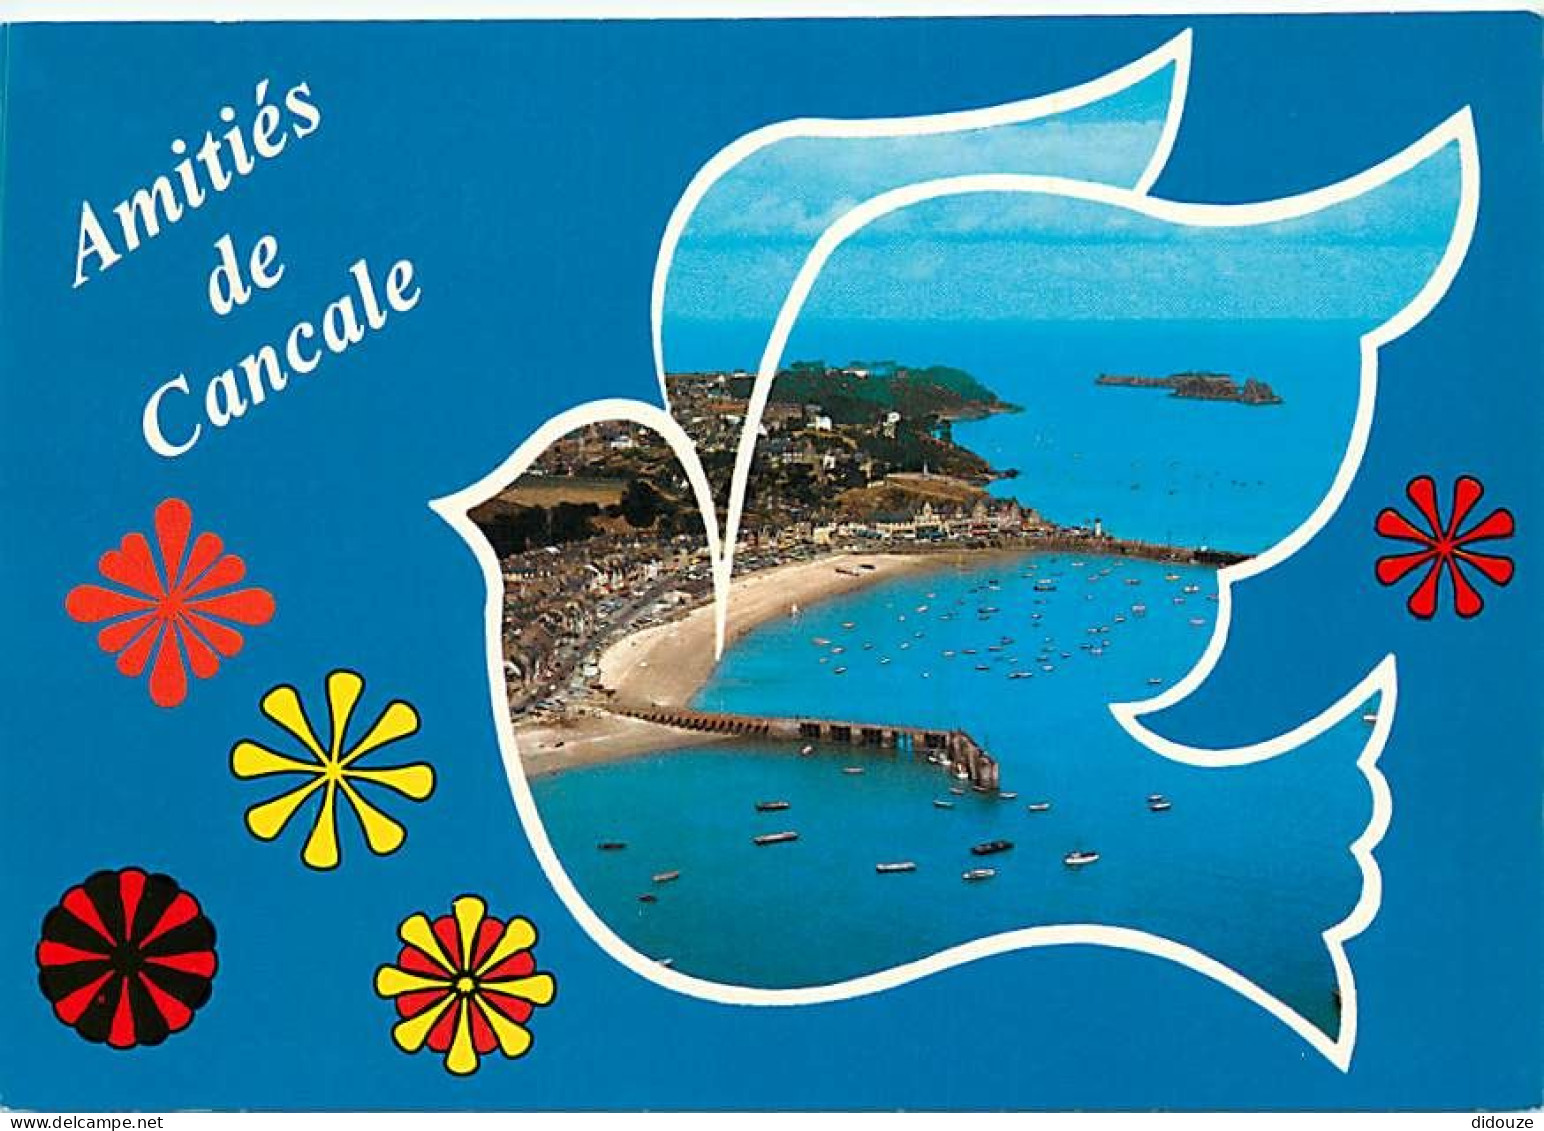 35 - Cancale - Vue D'ensemble - Le Port De La Houle - Vue Aérienne - CPM - Voir Scans Recto-Verso - Cancale